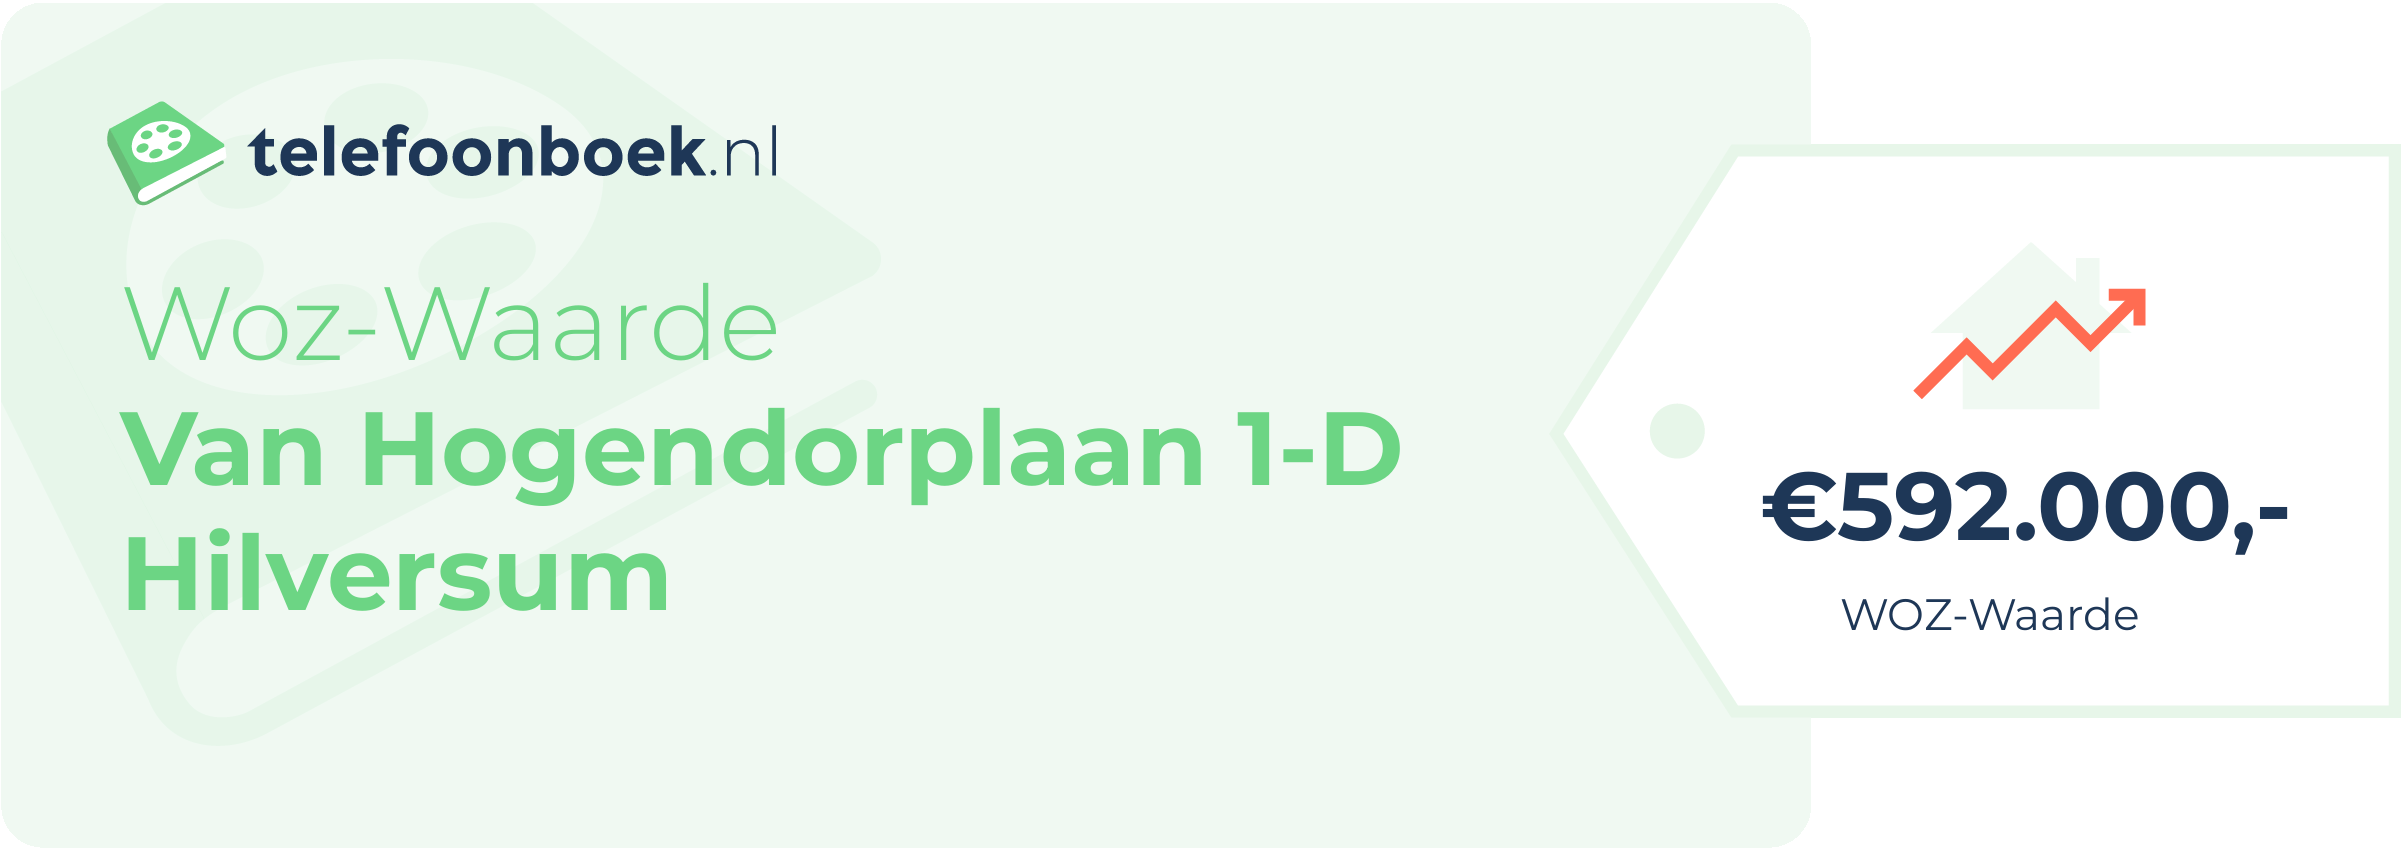 WOZ-waarde Van Hogendorplaan 1-D Hilversum